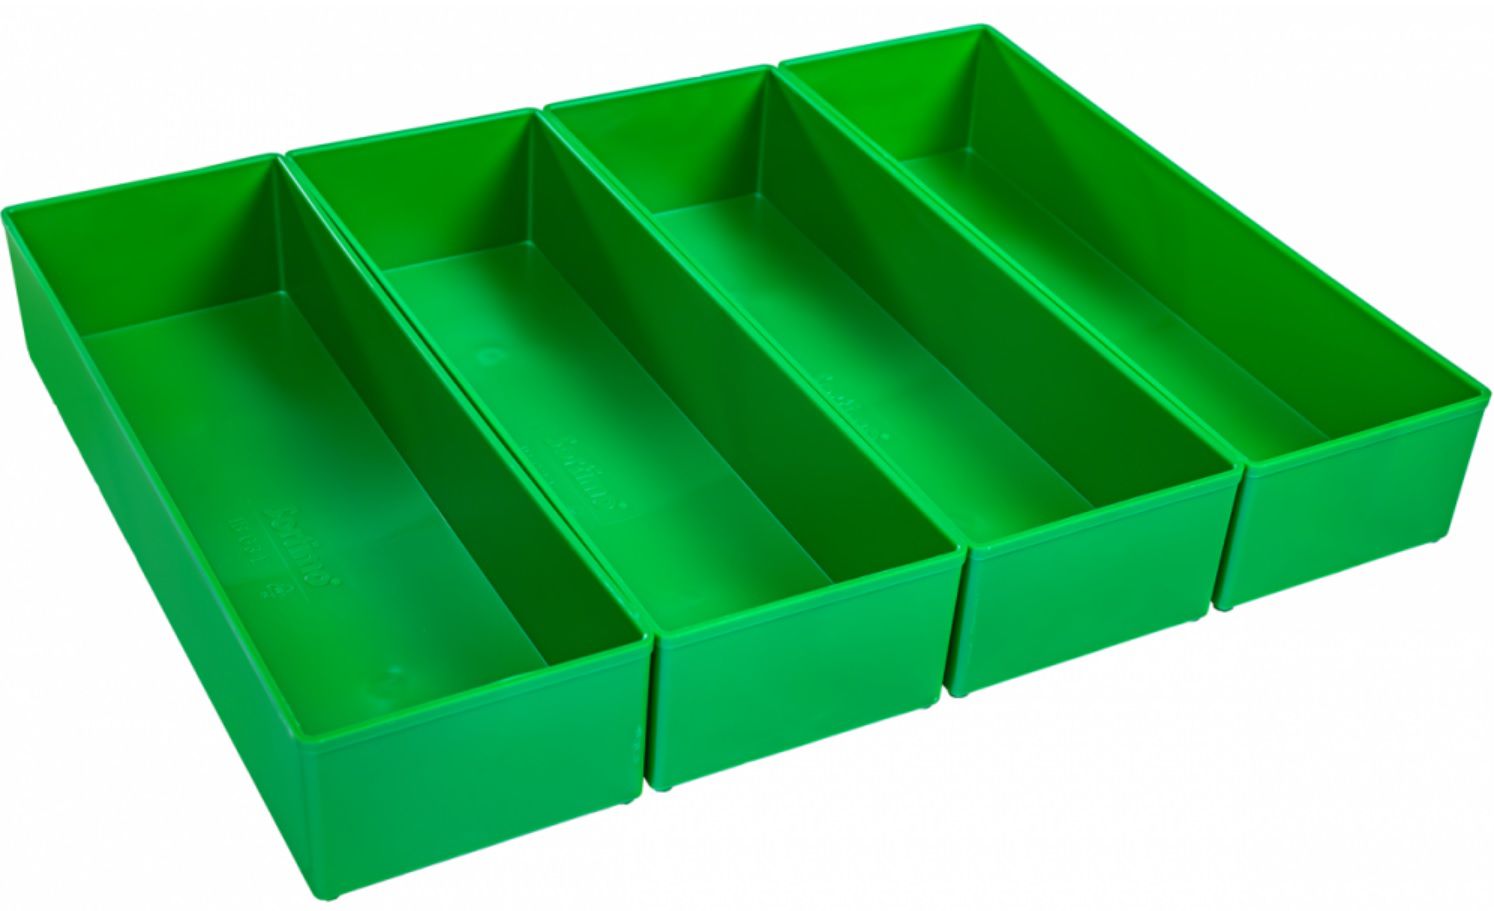 Insetbox G3 dunkelgrün  BSS für L-Boxx102+I-Boxx72 312 x 104  x 63 mm 4 Stk, 6000001819 - Werkzeugkoffer,Sortimentskoffer,Behälter